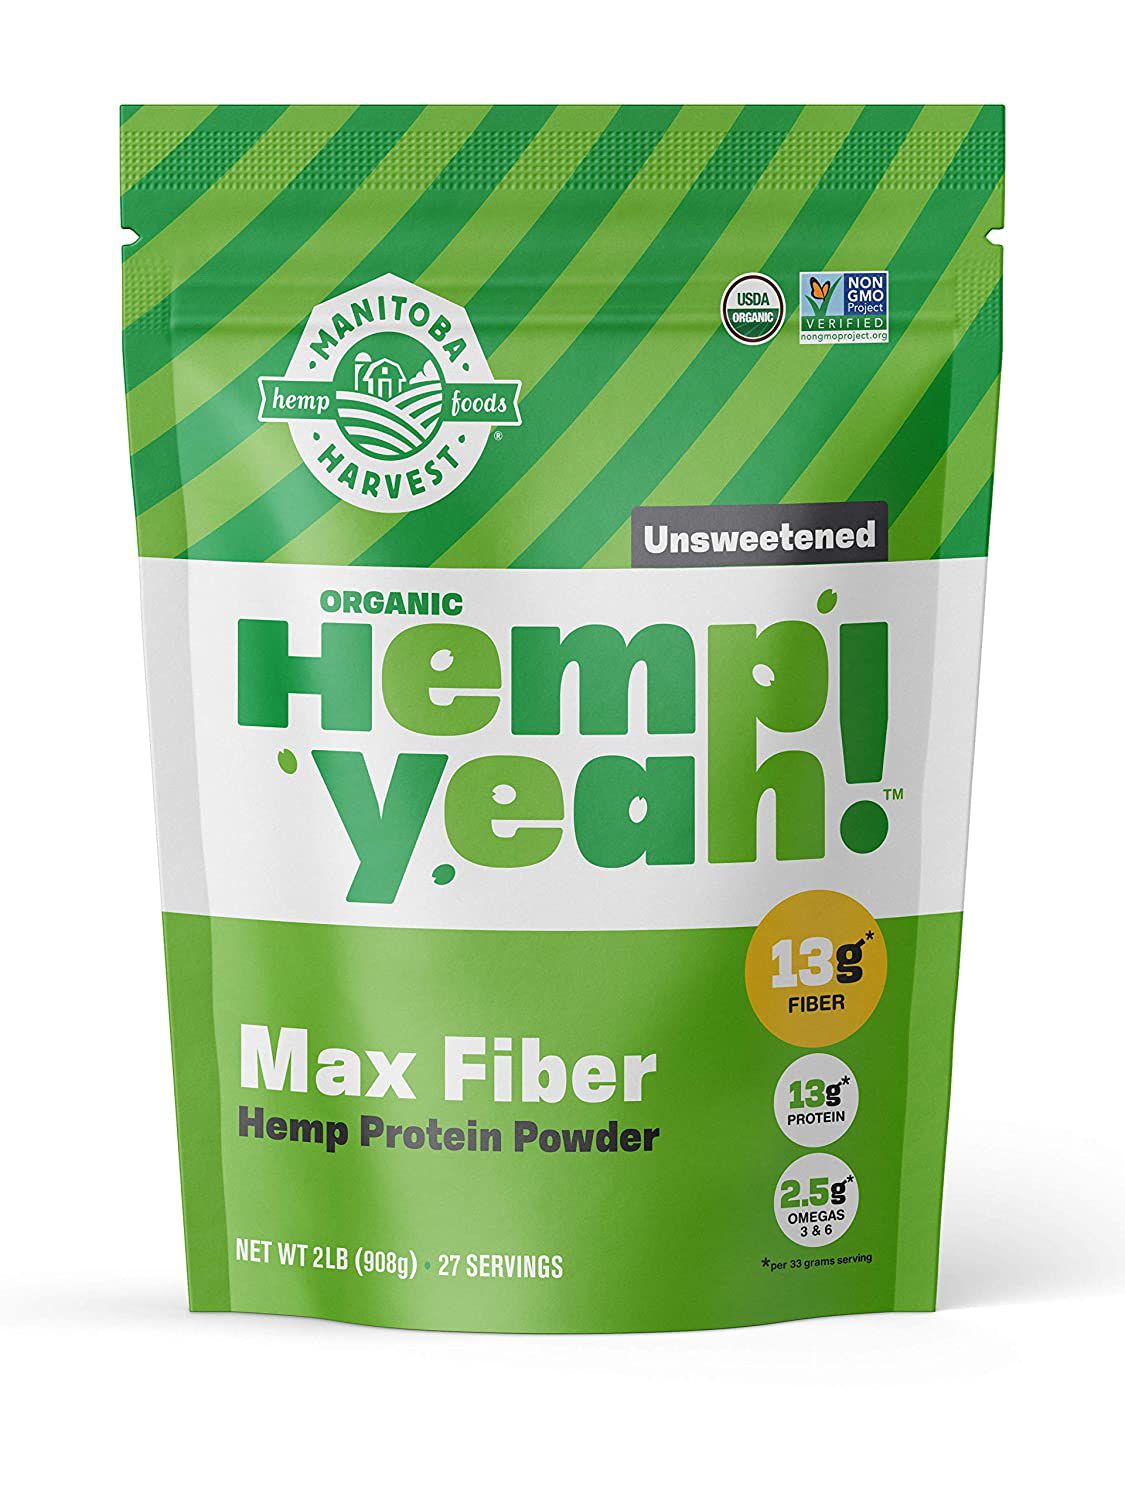 Manitoba Harvest Hennep Ja! Organisch Max Fiber Protein Powder